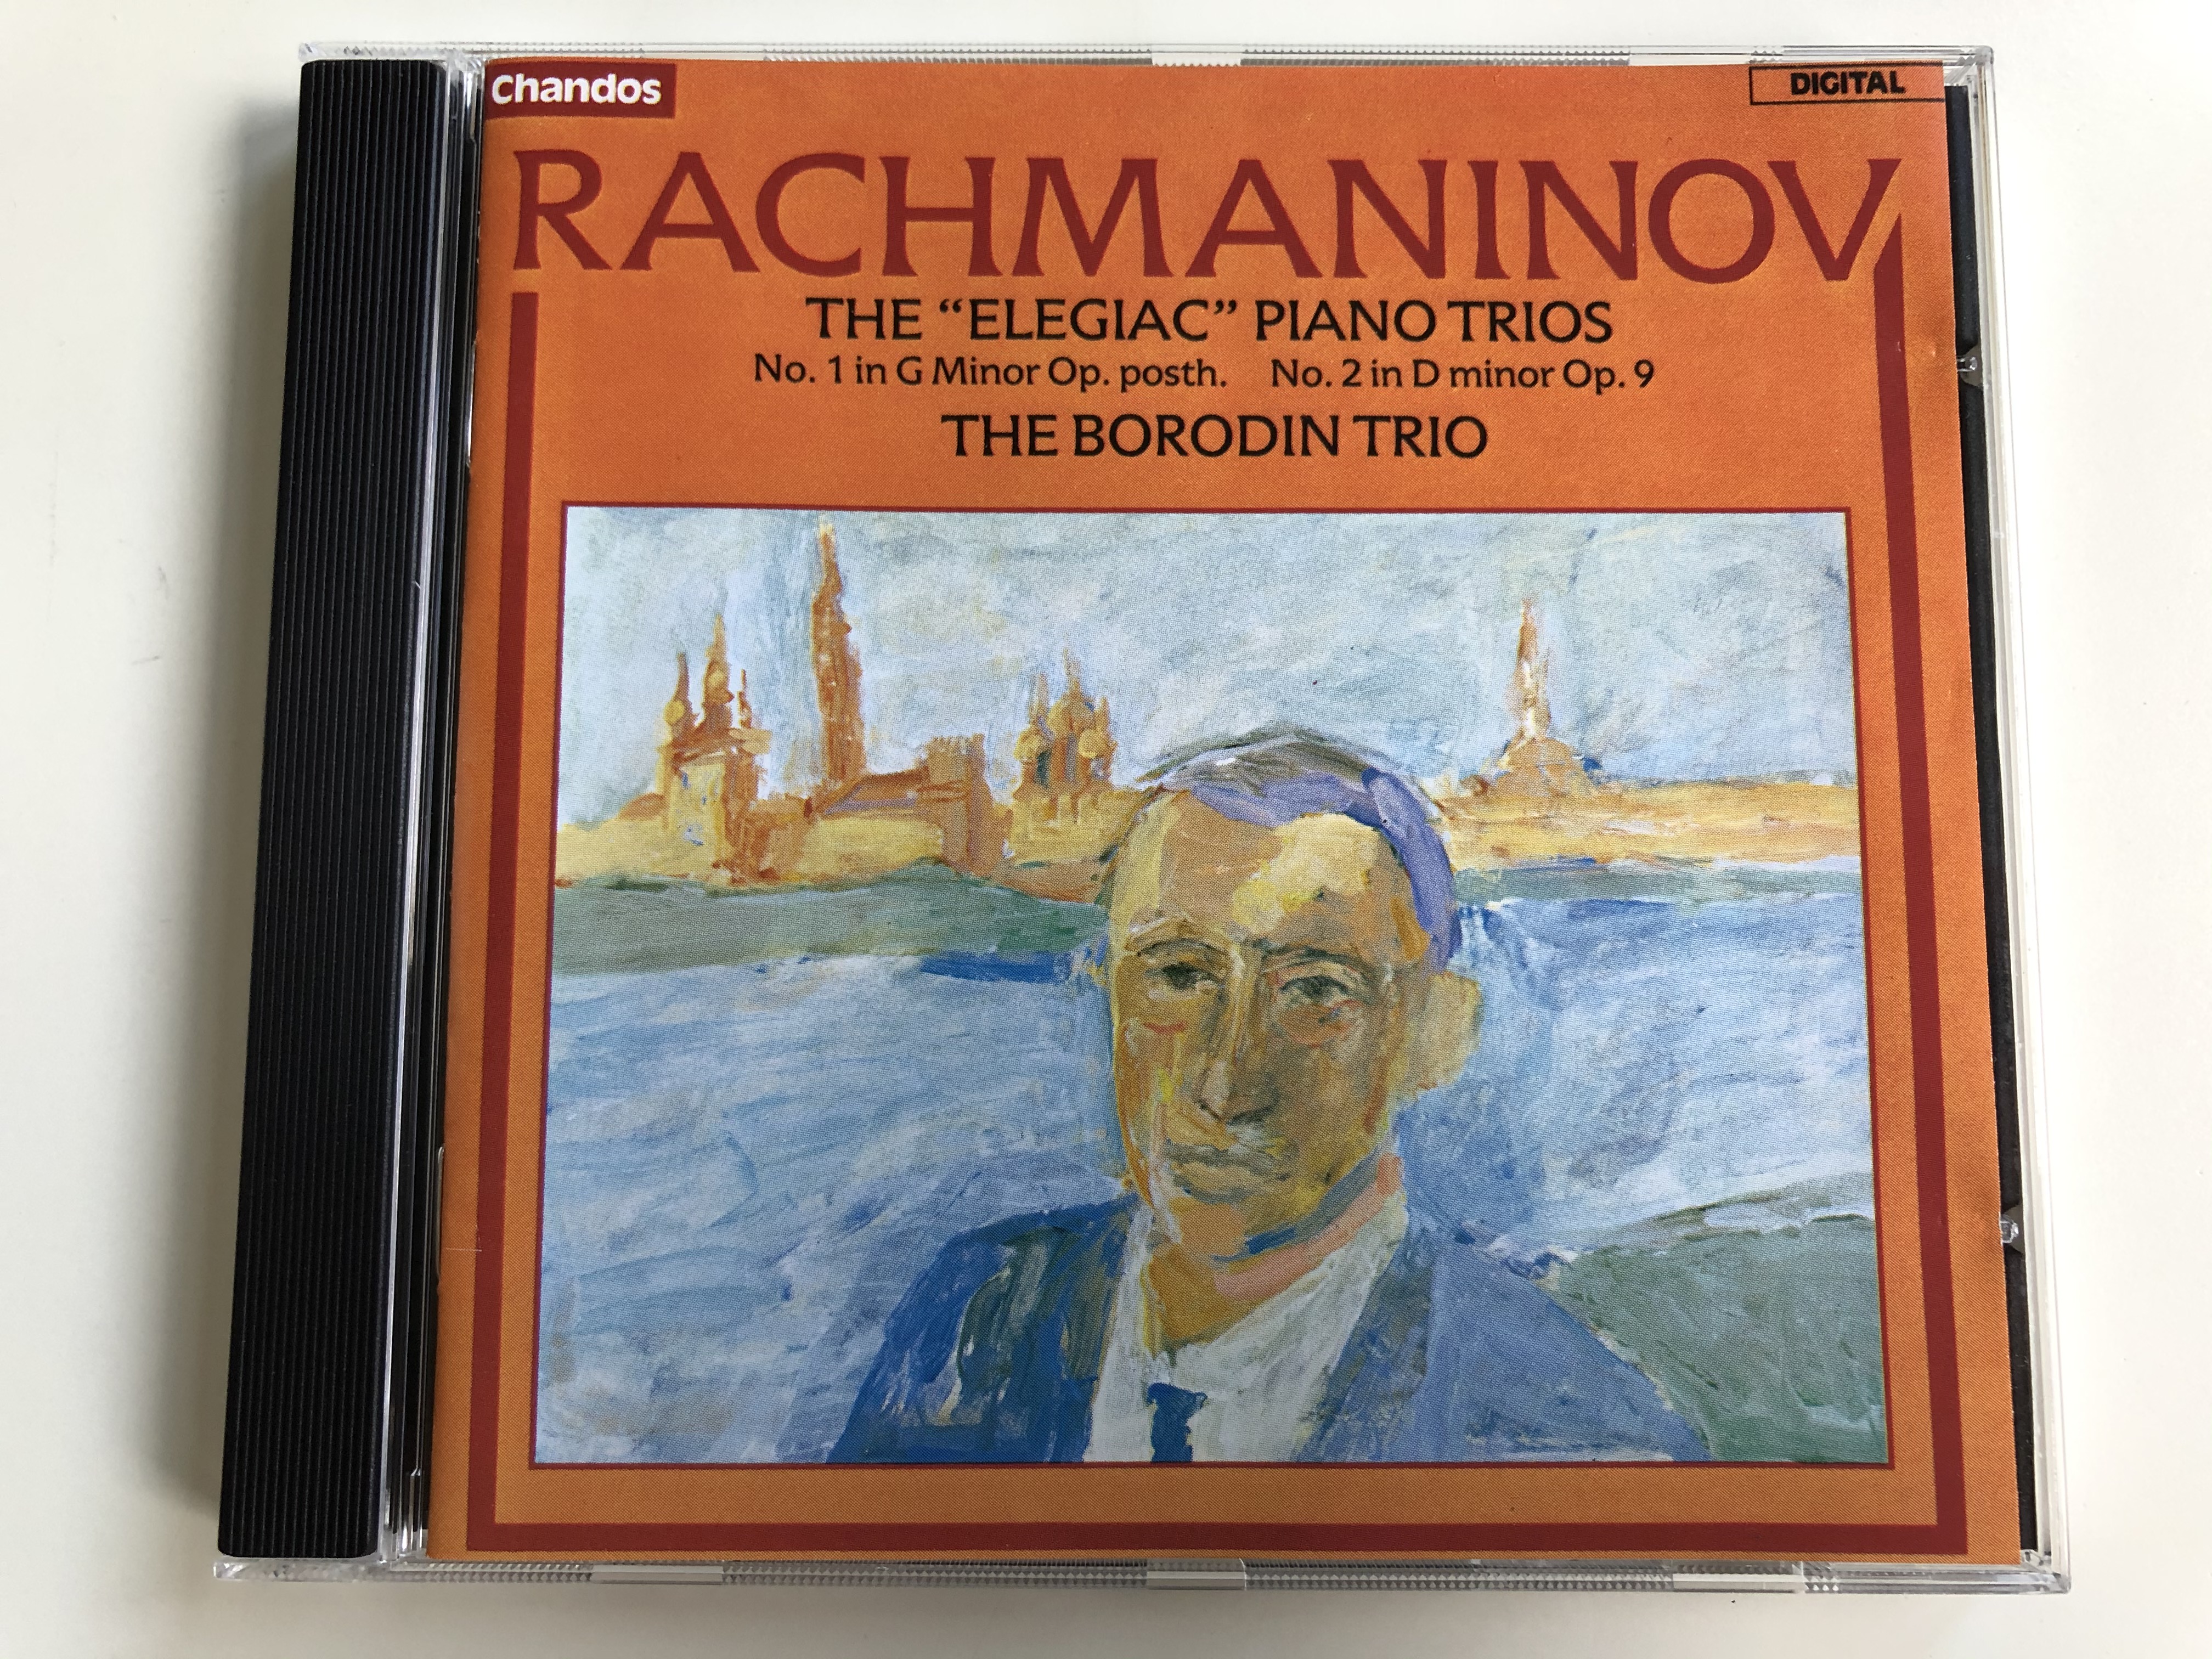 rachmaninov-the-elegiac-piano-trios-no.-1-in-g-minor-op.-posth.-no.-2-in-d-minor-op.-9-the-borodin-trio-chandos-audio-cd-1984-chan8341-1-.jpg